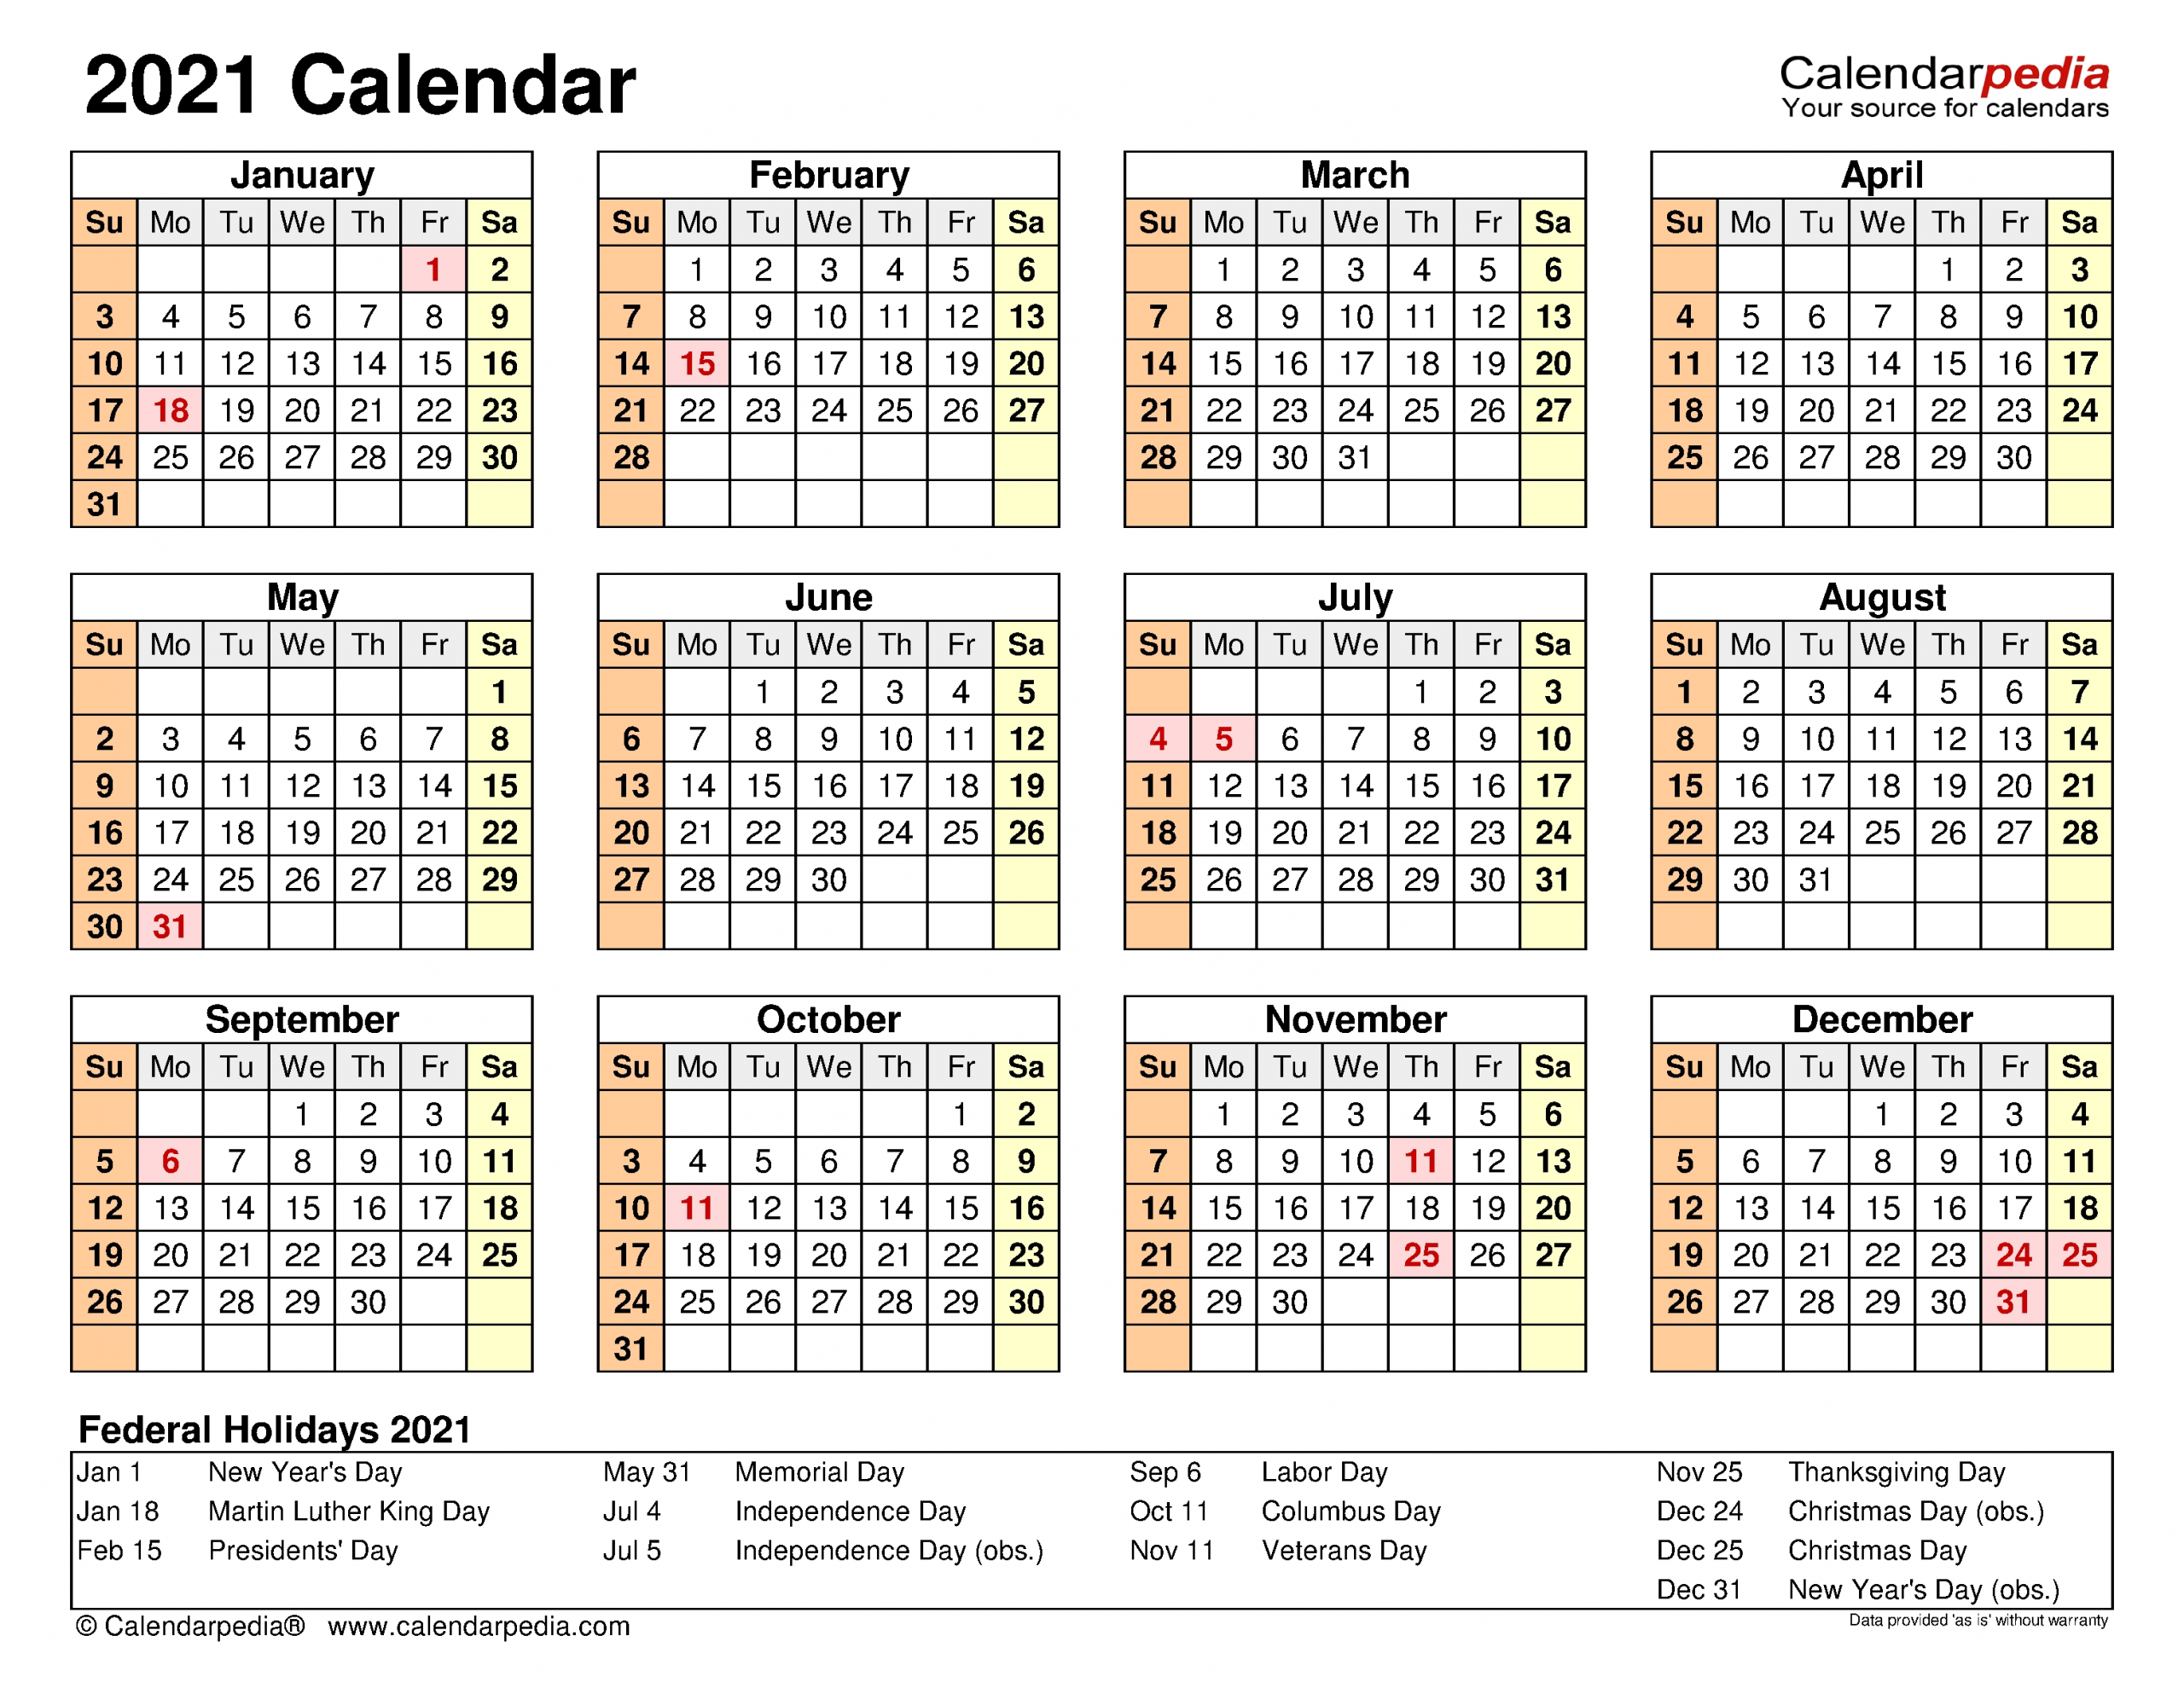 2021 Calendar - Free Printable Excel Templates - Calendarpedia-Editable Employee Vacation Calendar Template 2021